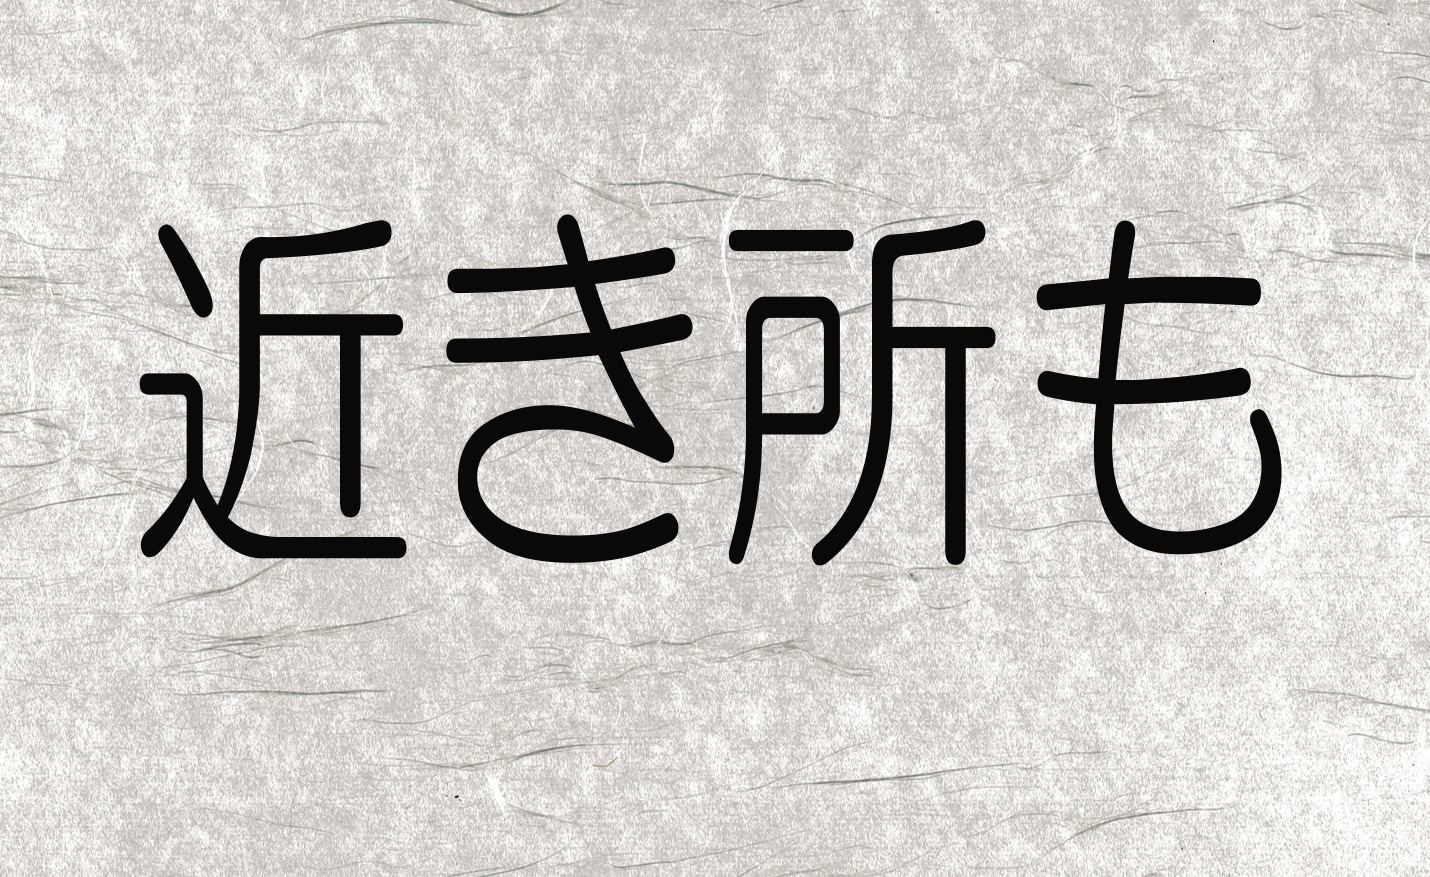 夏目漱石 こころ のあらすじ 名言から学ぶ人間性の教訓